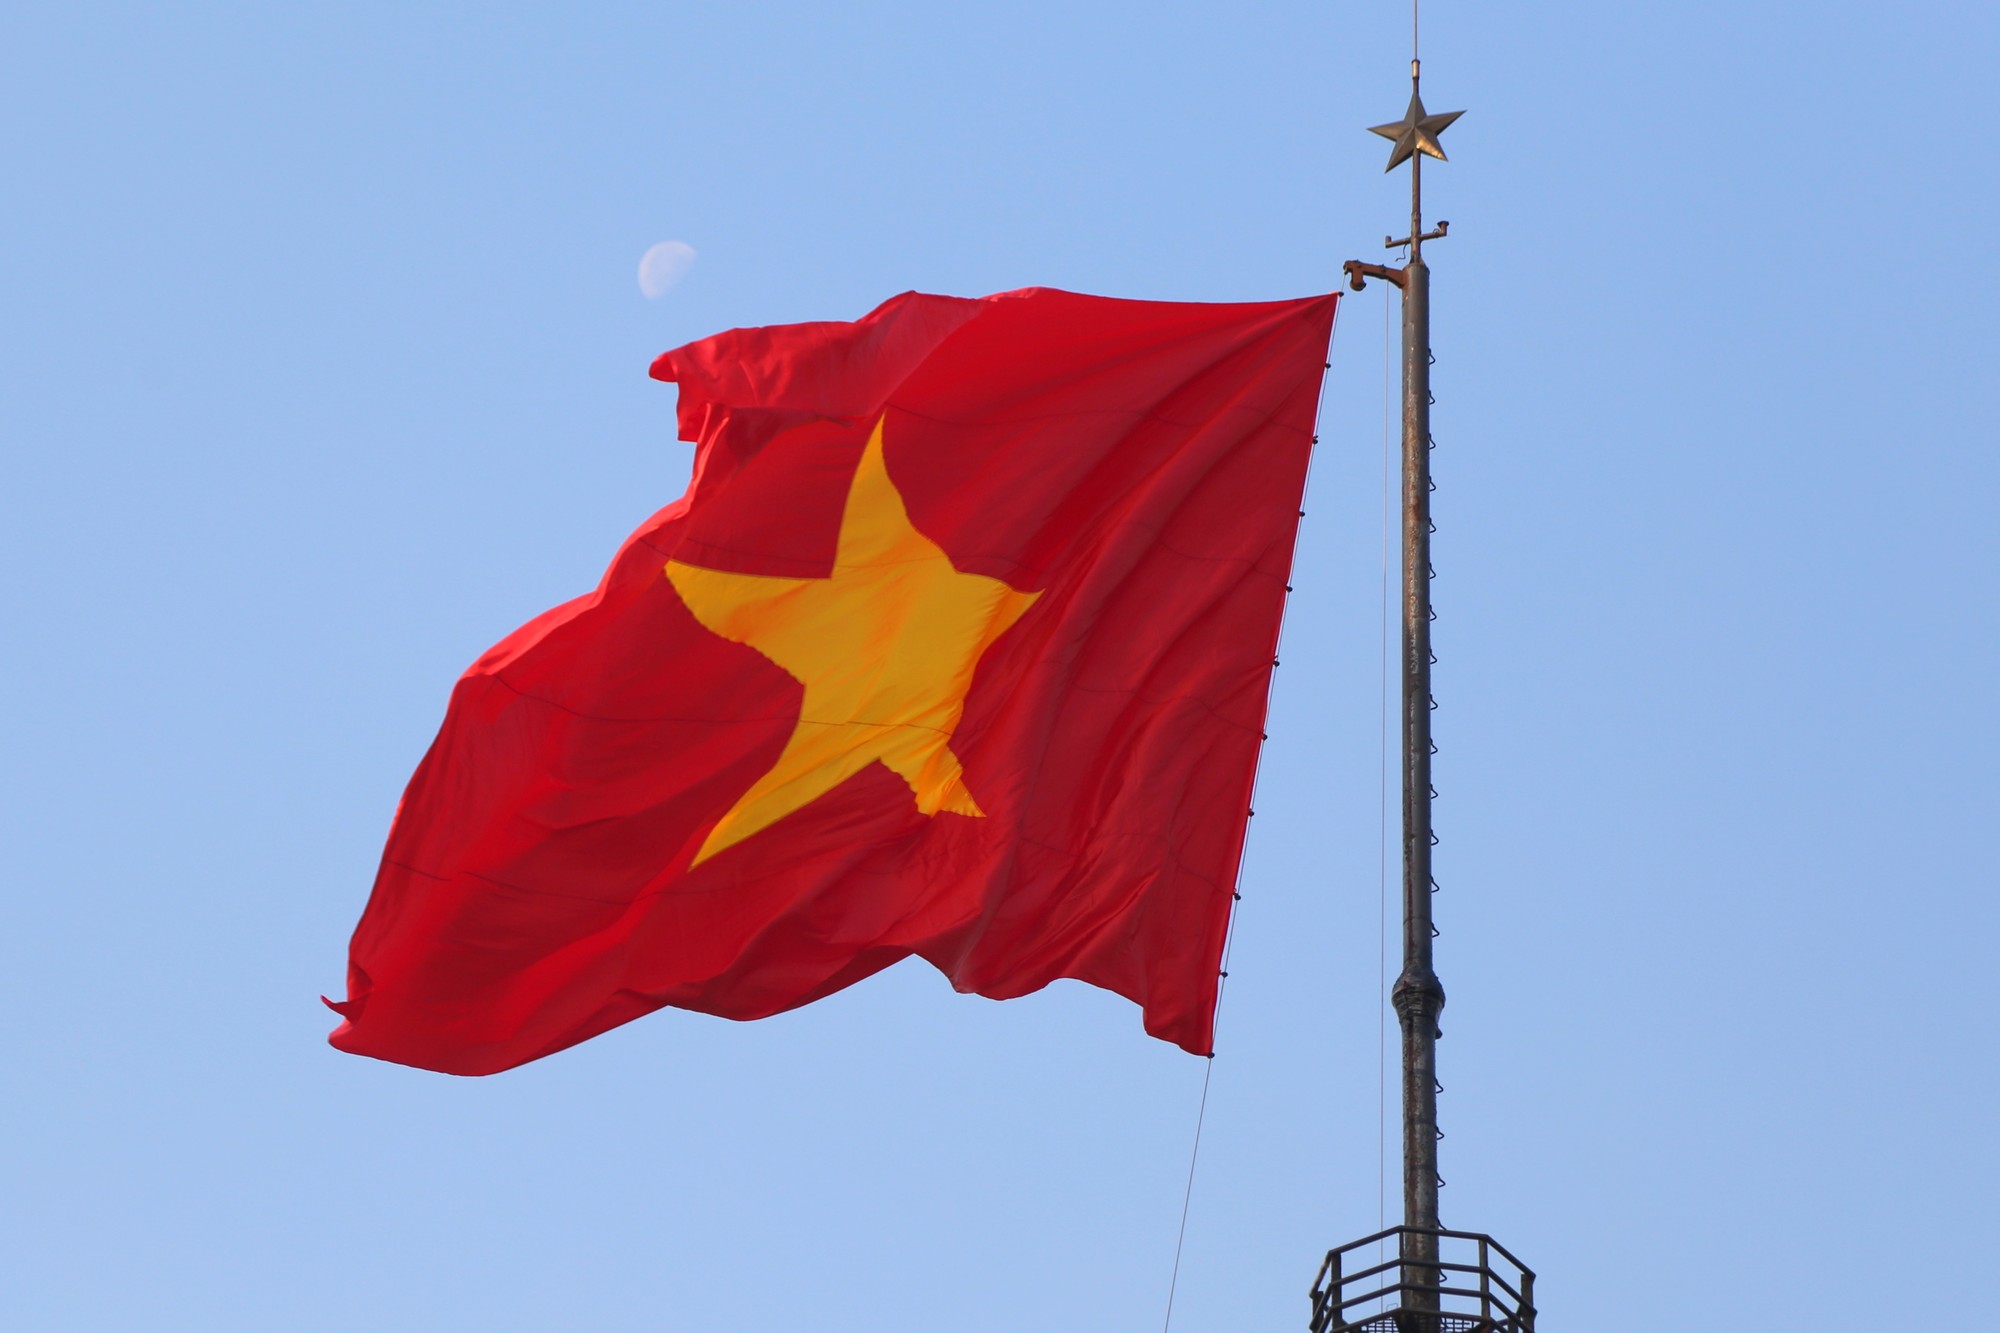 Trong tiếng nhạc Tiến quân ca oai hùng, lá cờ Tổ quốc được kéo lên đỉnh Kỳ đài Hiền Lương. Đông đảo cán bộ, Nhân dân tham dự đều tự hào xen lẫn xúc động.